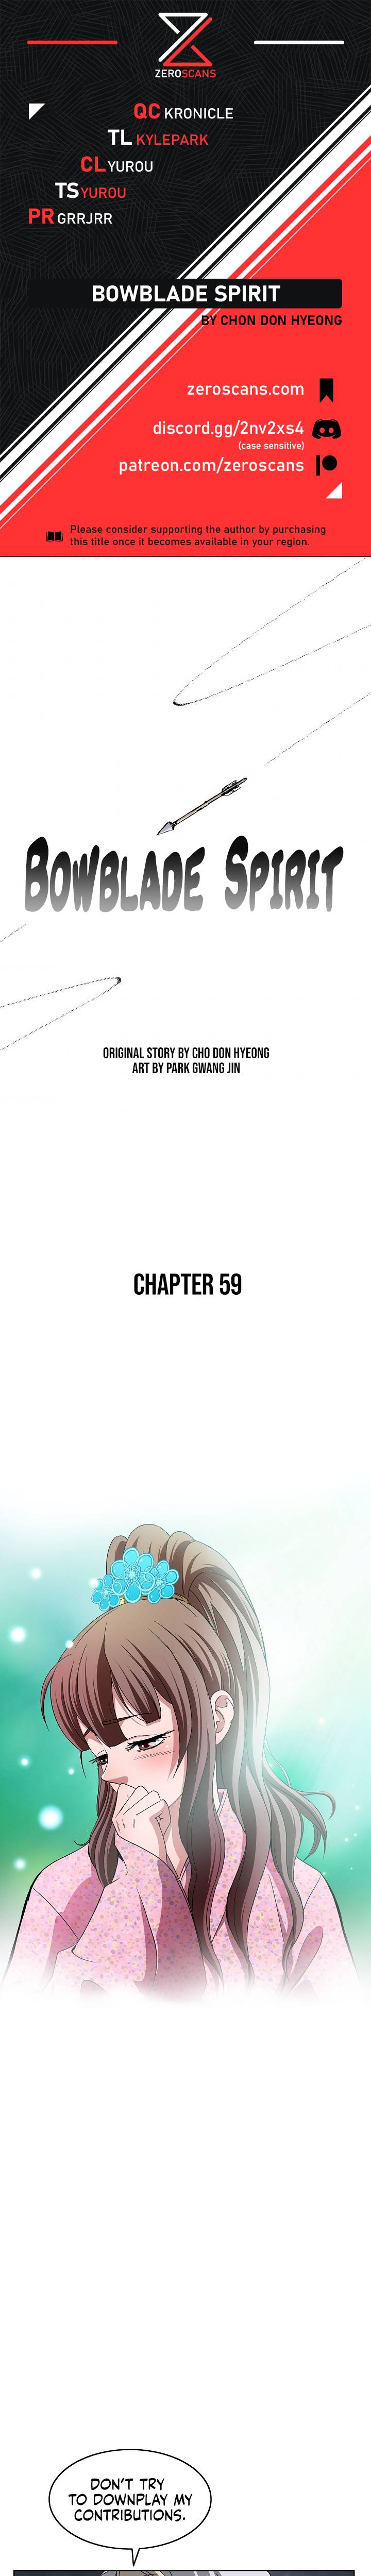 Bowblade Spirit - Chapter 59 Page 1